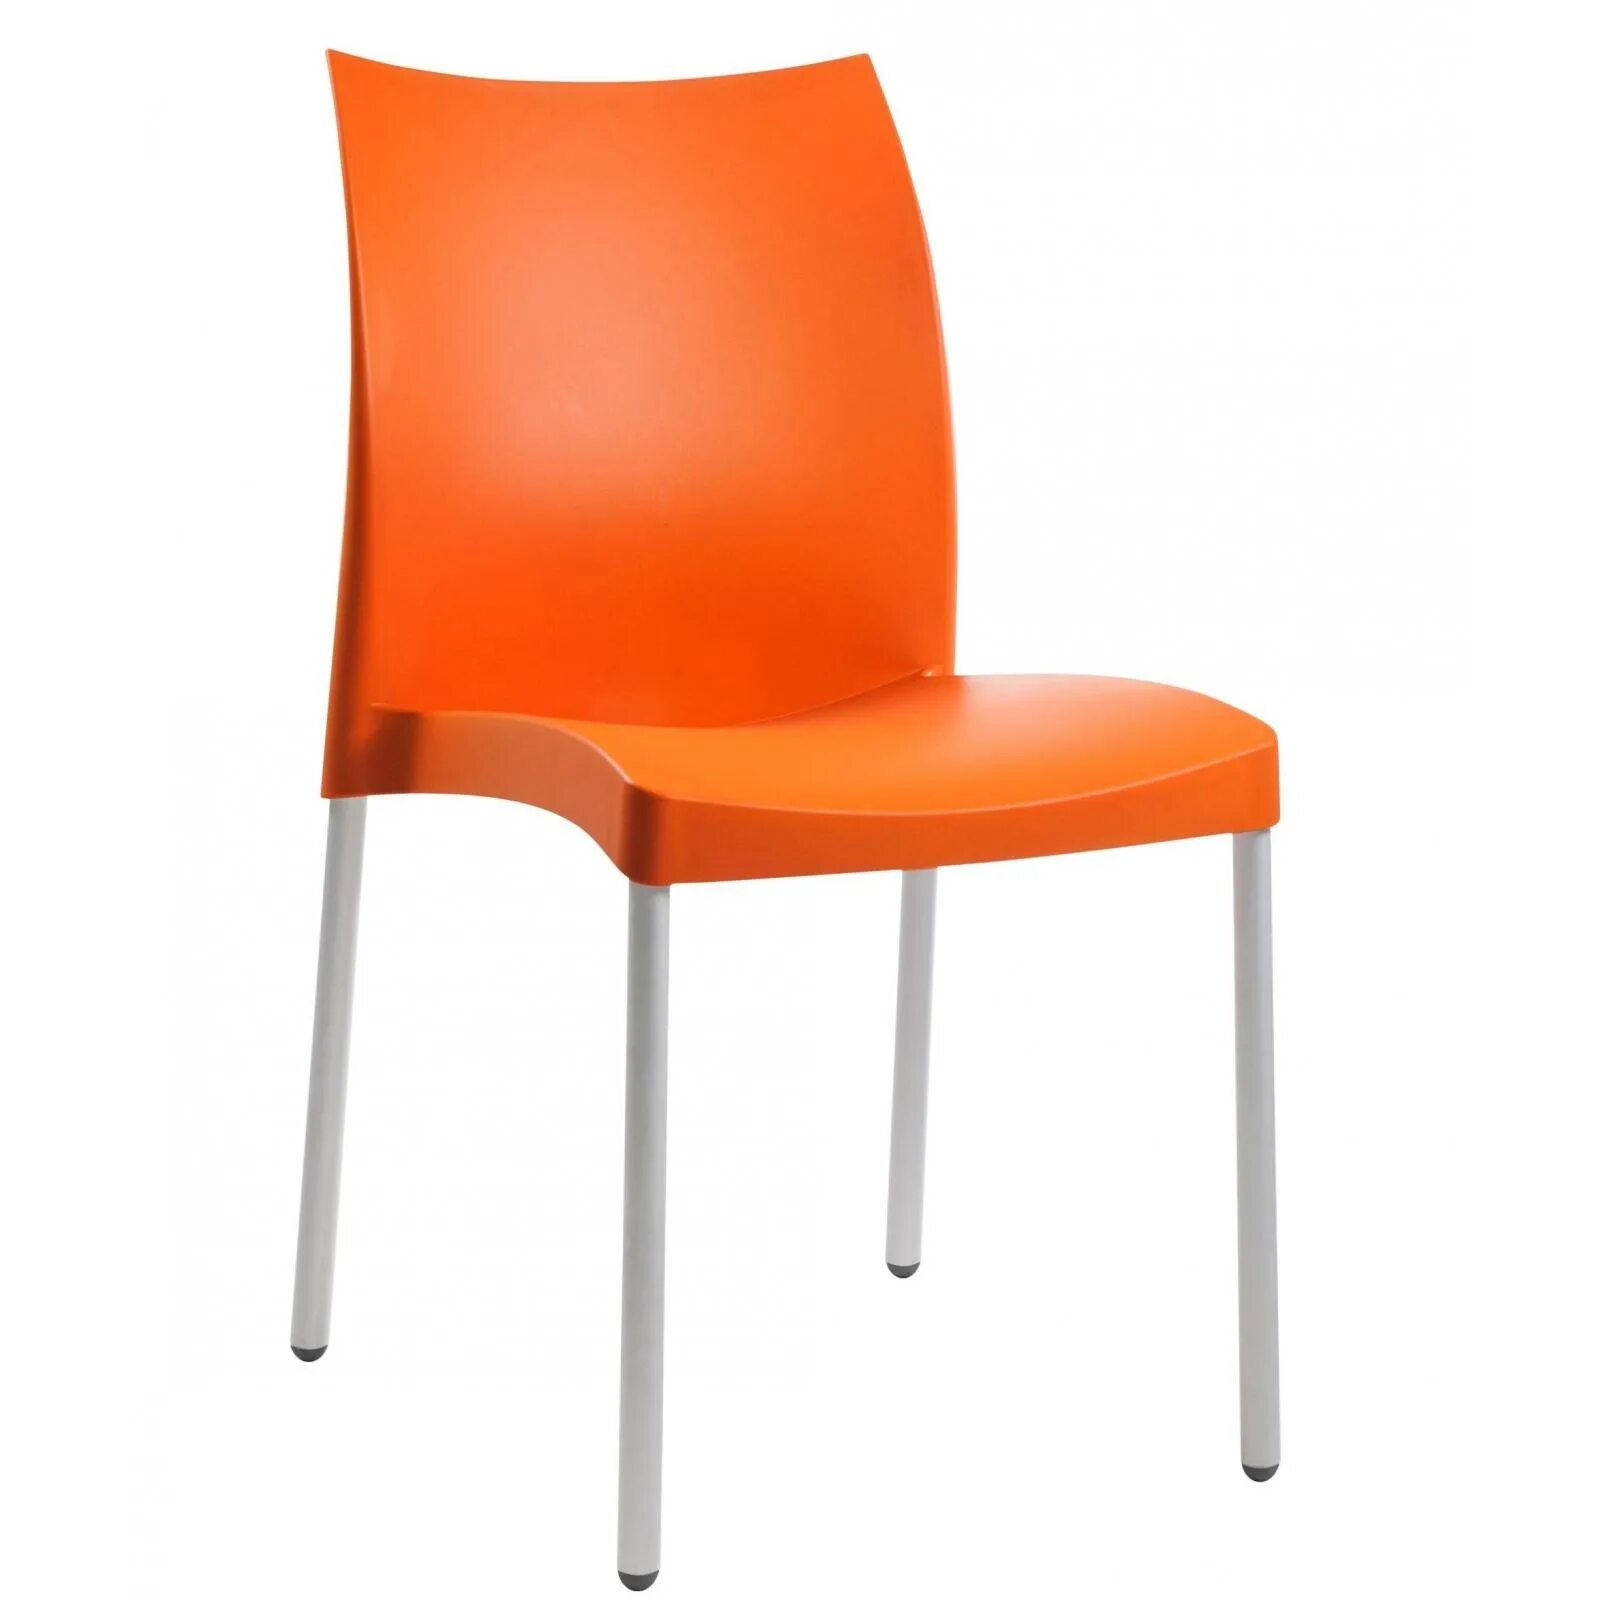 Купить оранжевый стул. Стул Marvel. Оранжевый стул. Стул кухонный оранжевый. Стул пластик оранжевый.